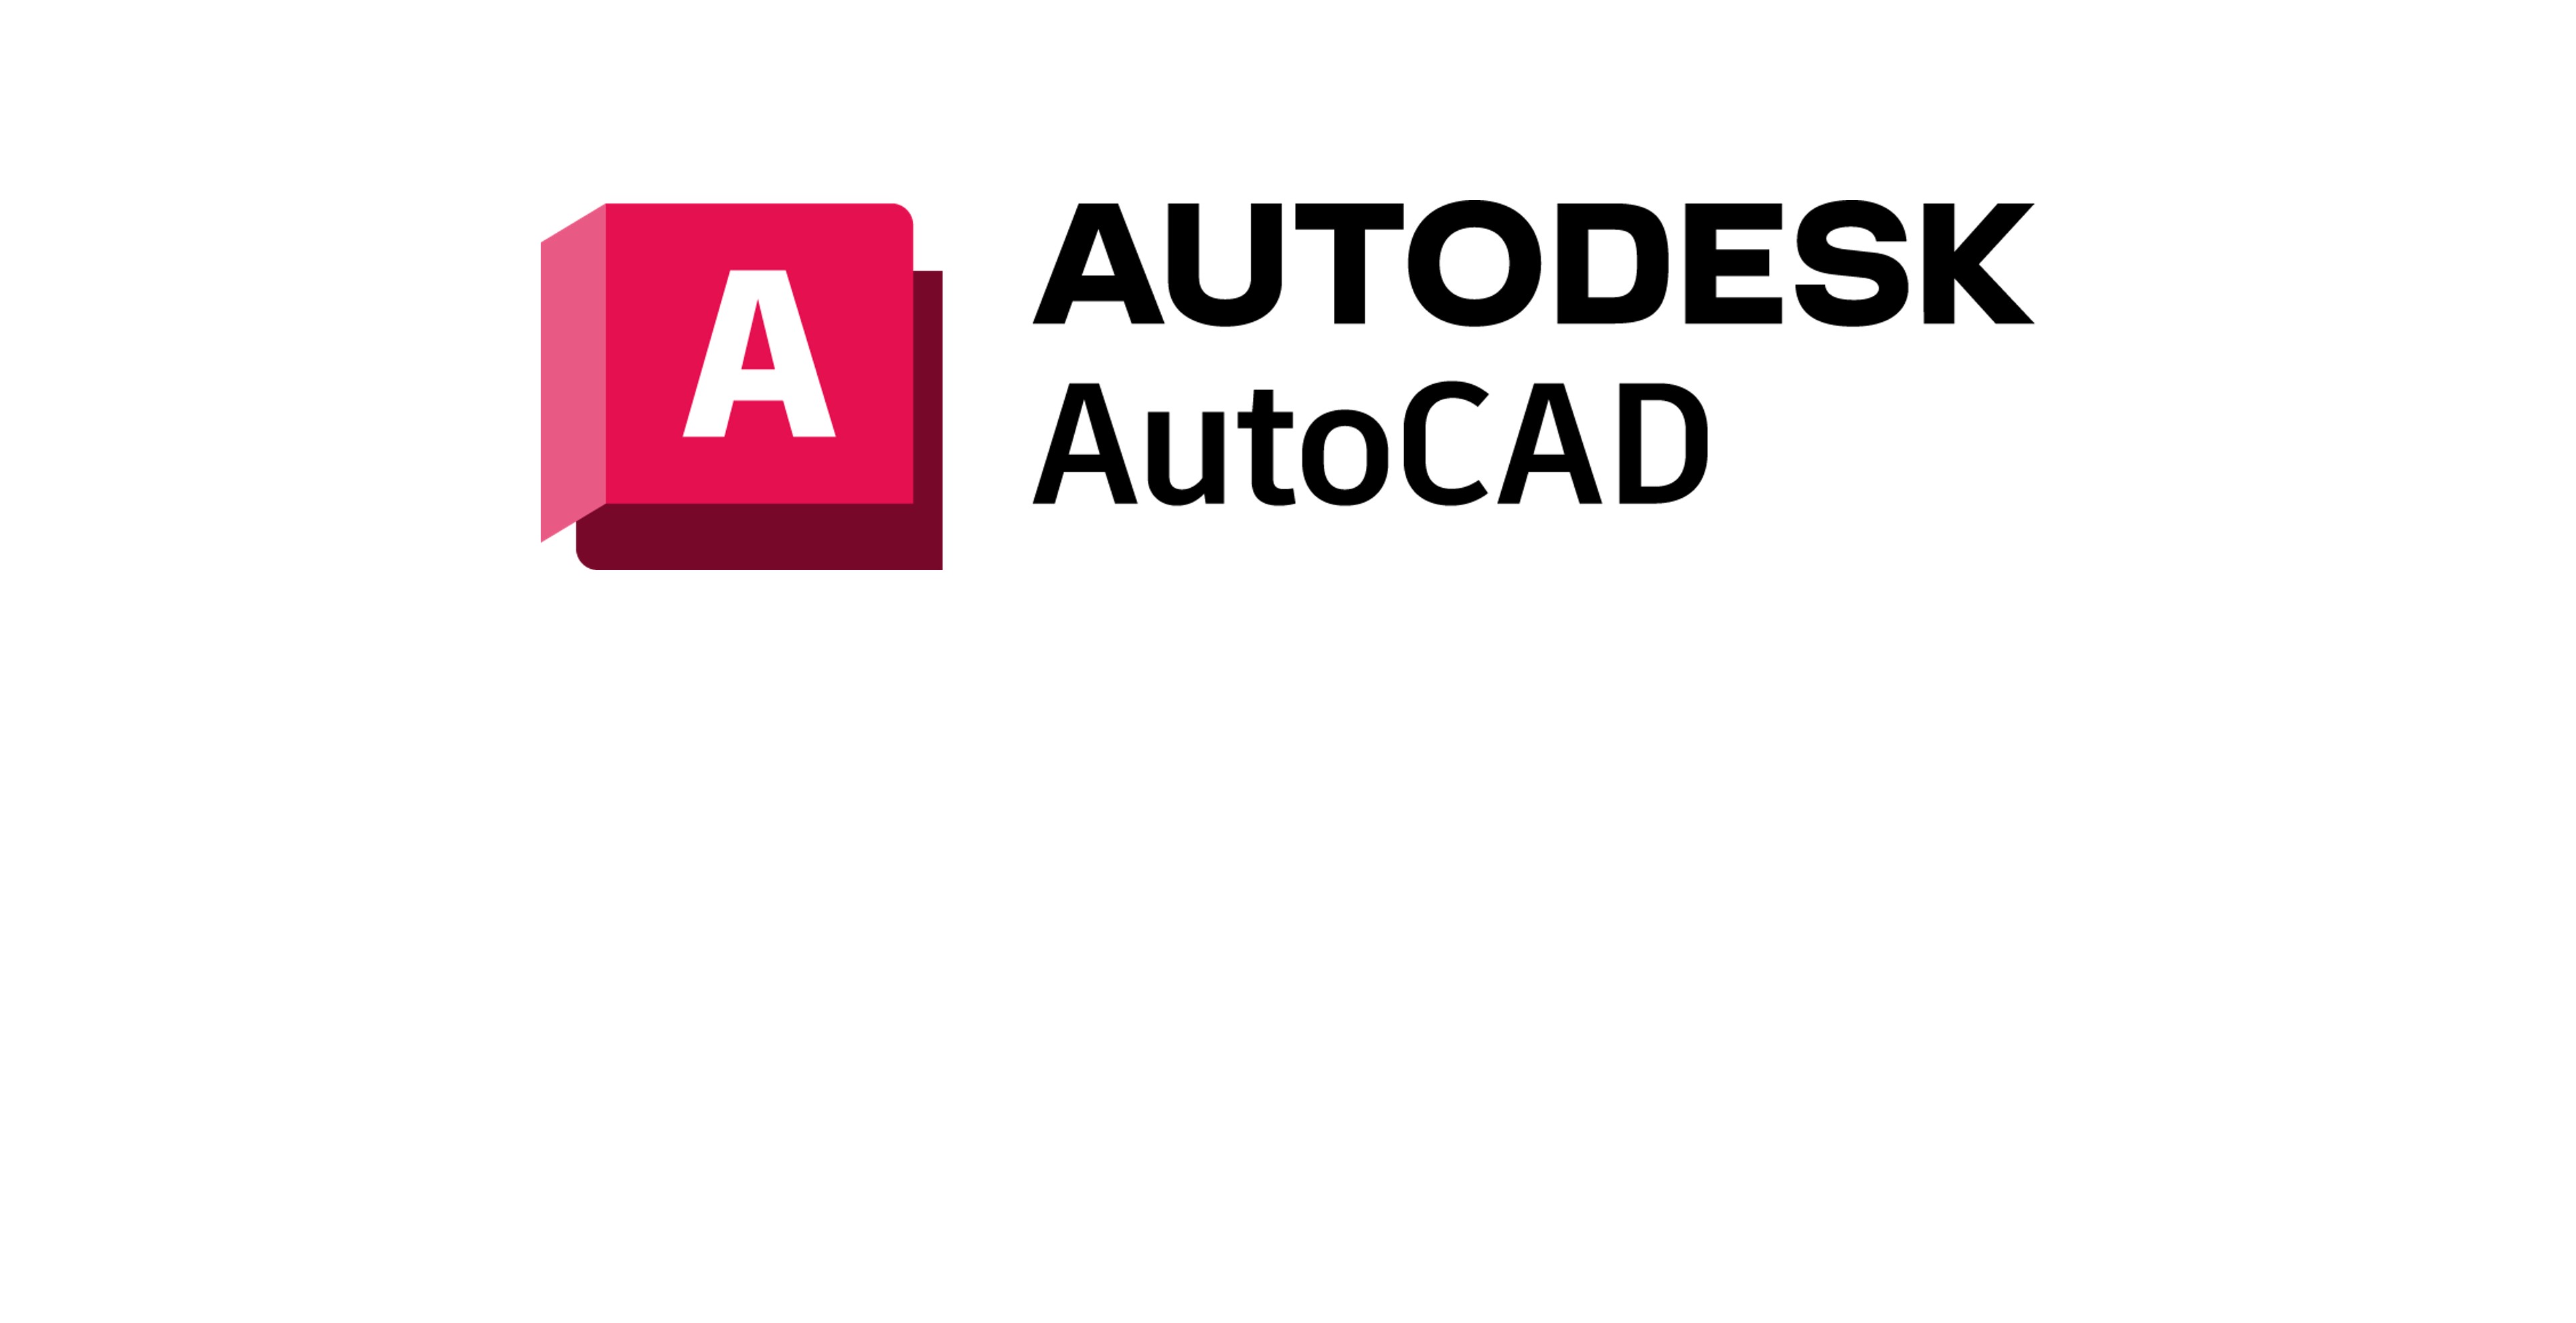 AutoCAD i AutoCAD LT